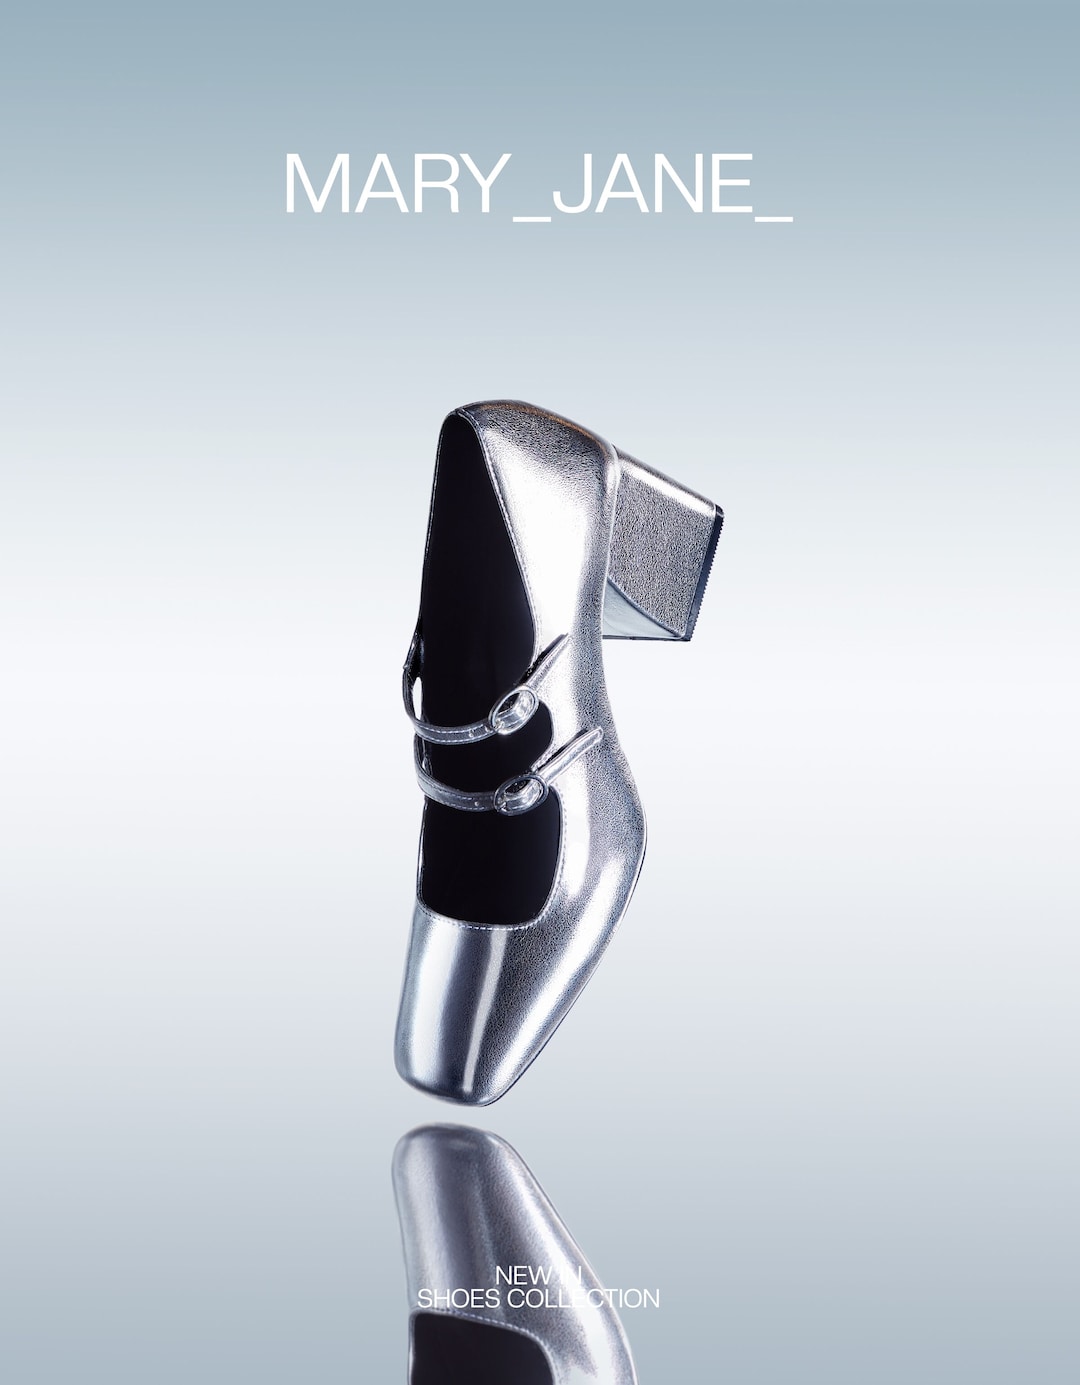 Schuhe mit breitem Absatz im Mary Jane-Stil